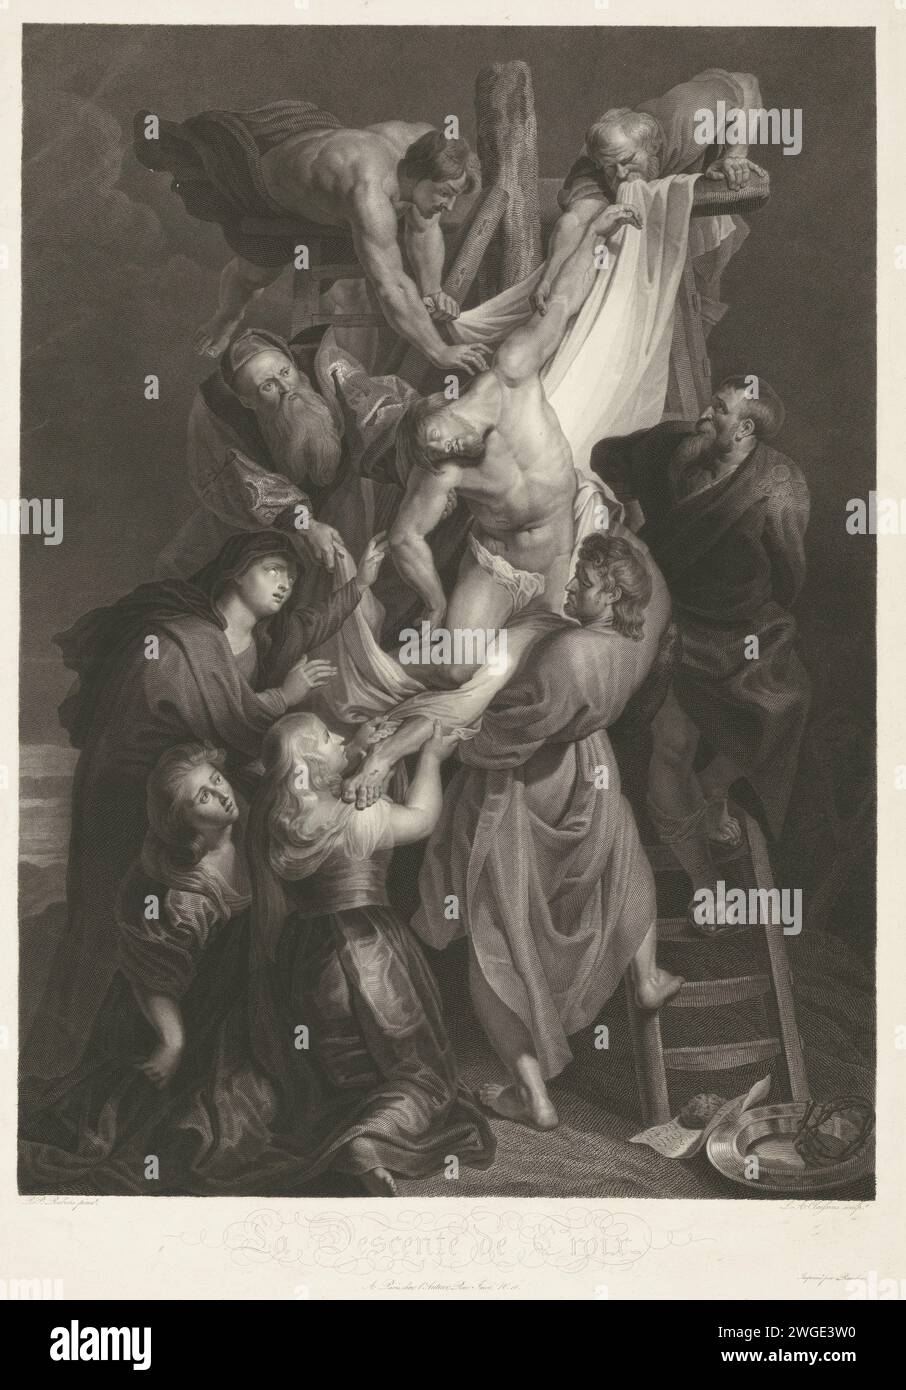 Kreuzung, Lambertus Antonius Claessens, nach Peter Paul Rubens, 1809 - 1818 Druckerei: Parisprinter: Franziskus: Paris Papierstich Christus ist niedergelegt  Abstieg vom Kreuz Stockfoto